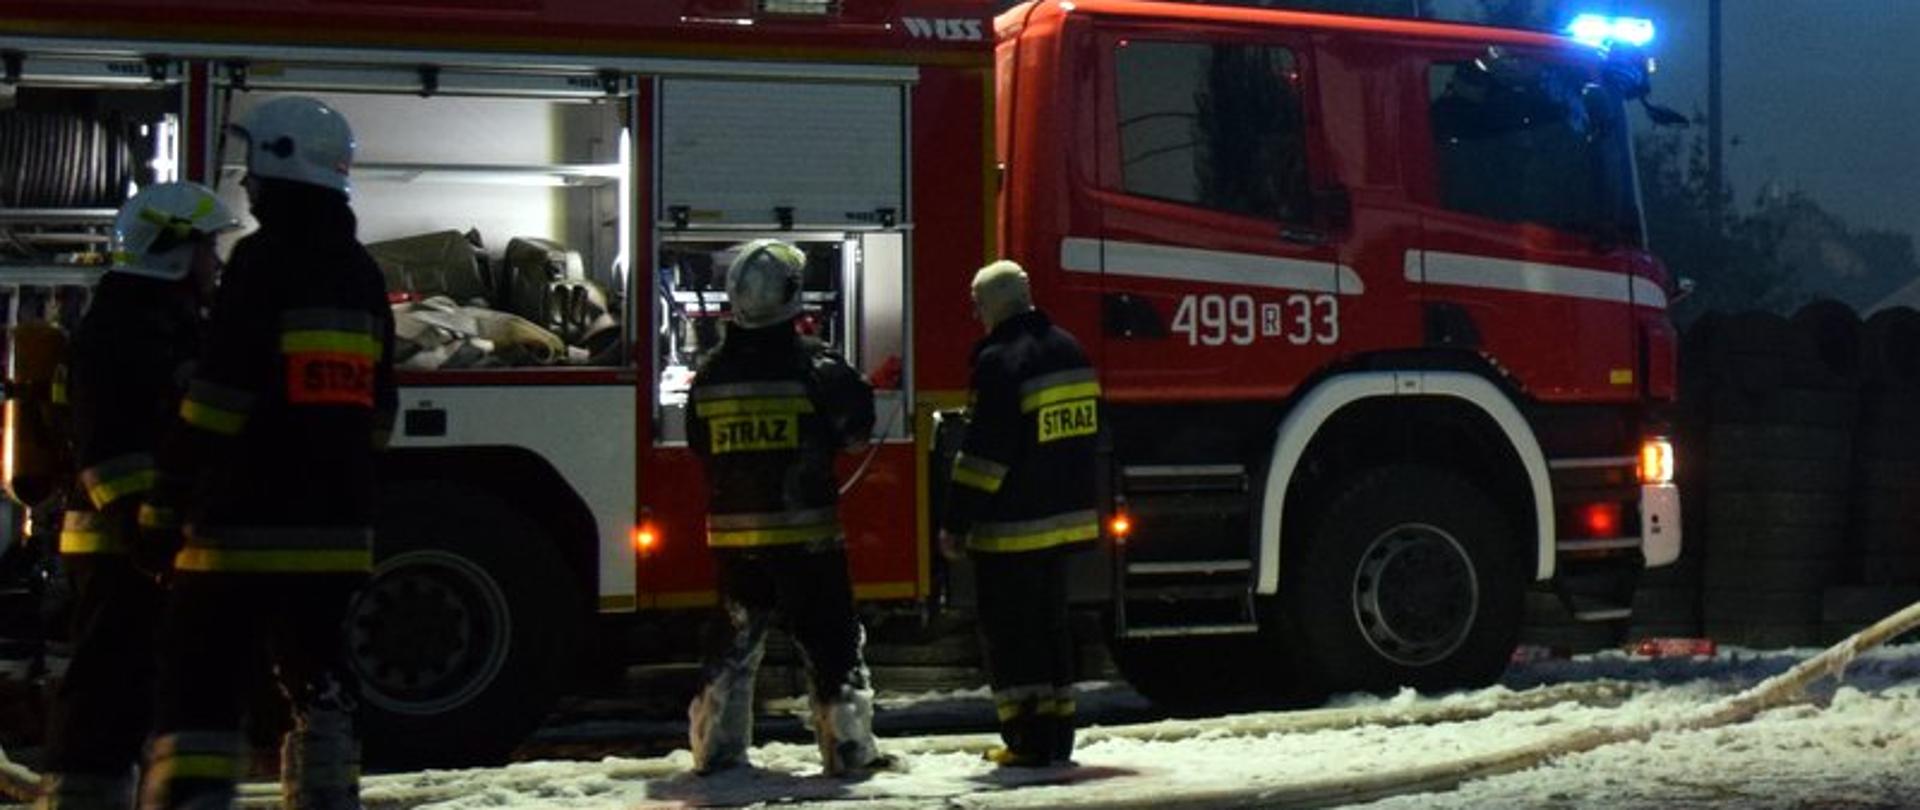 Czterech strażaków stojących na tle samochodu pożarniczego. Zdjęcie zrobione w nocy. Strażacy przygotowują się do gaszenia pożaru zakładając aparaty powietrzne. Zdjęcie ilustracyjne.